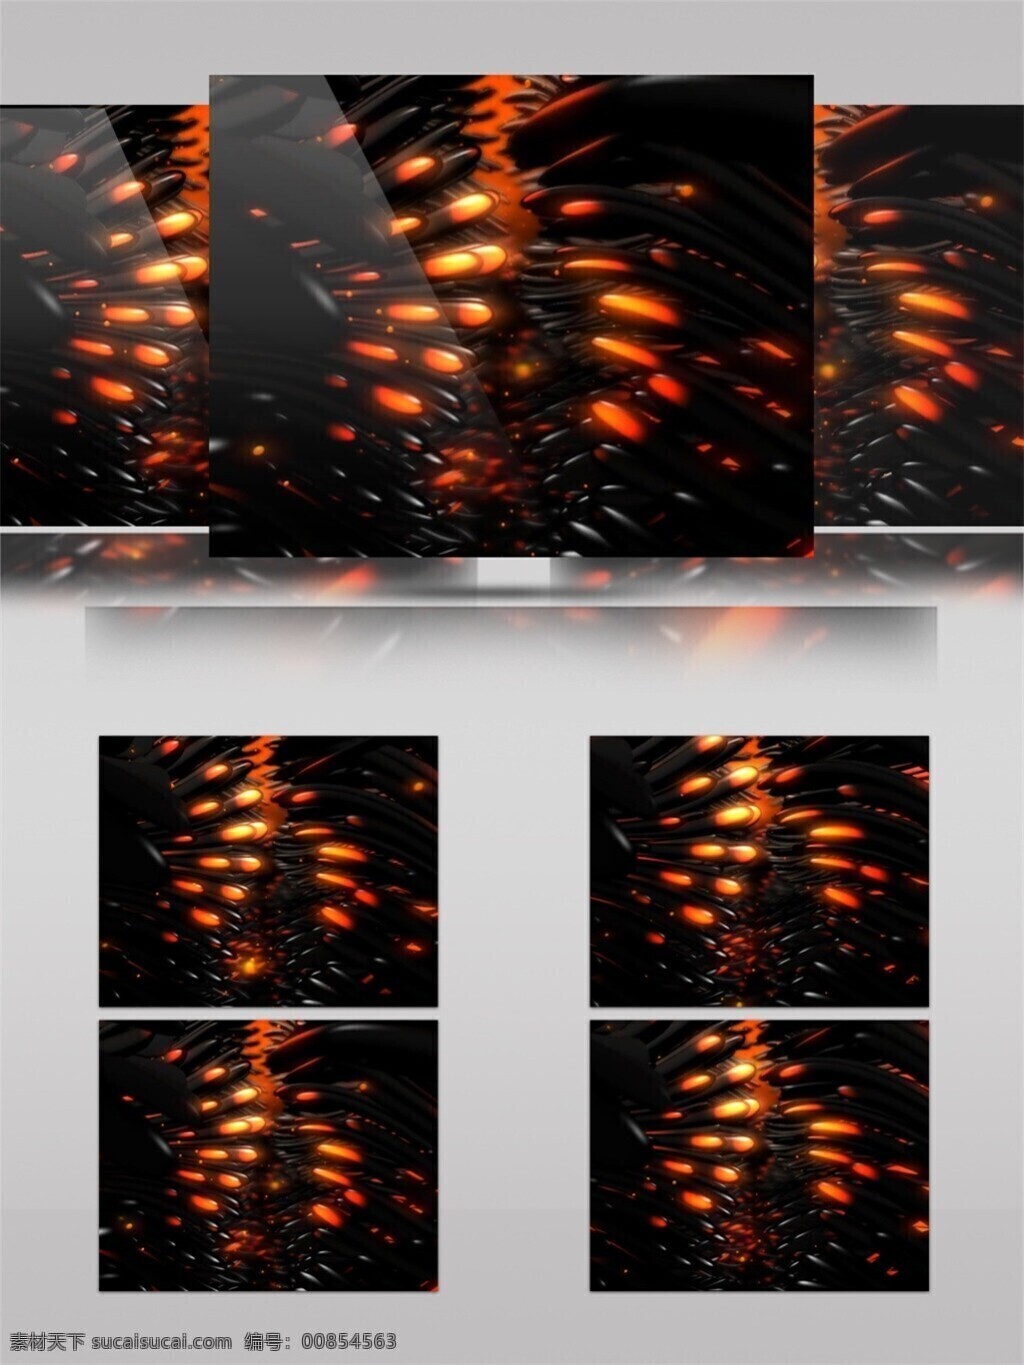 光斑散射 光束 红色 激光 视觉享受 手机壁纸 星际 视频